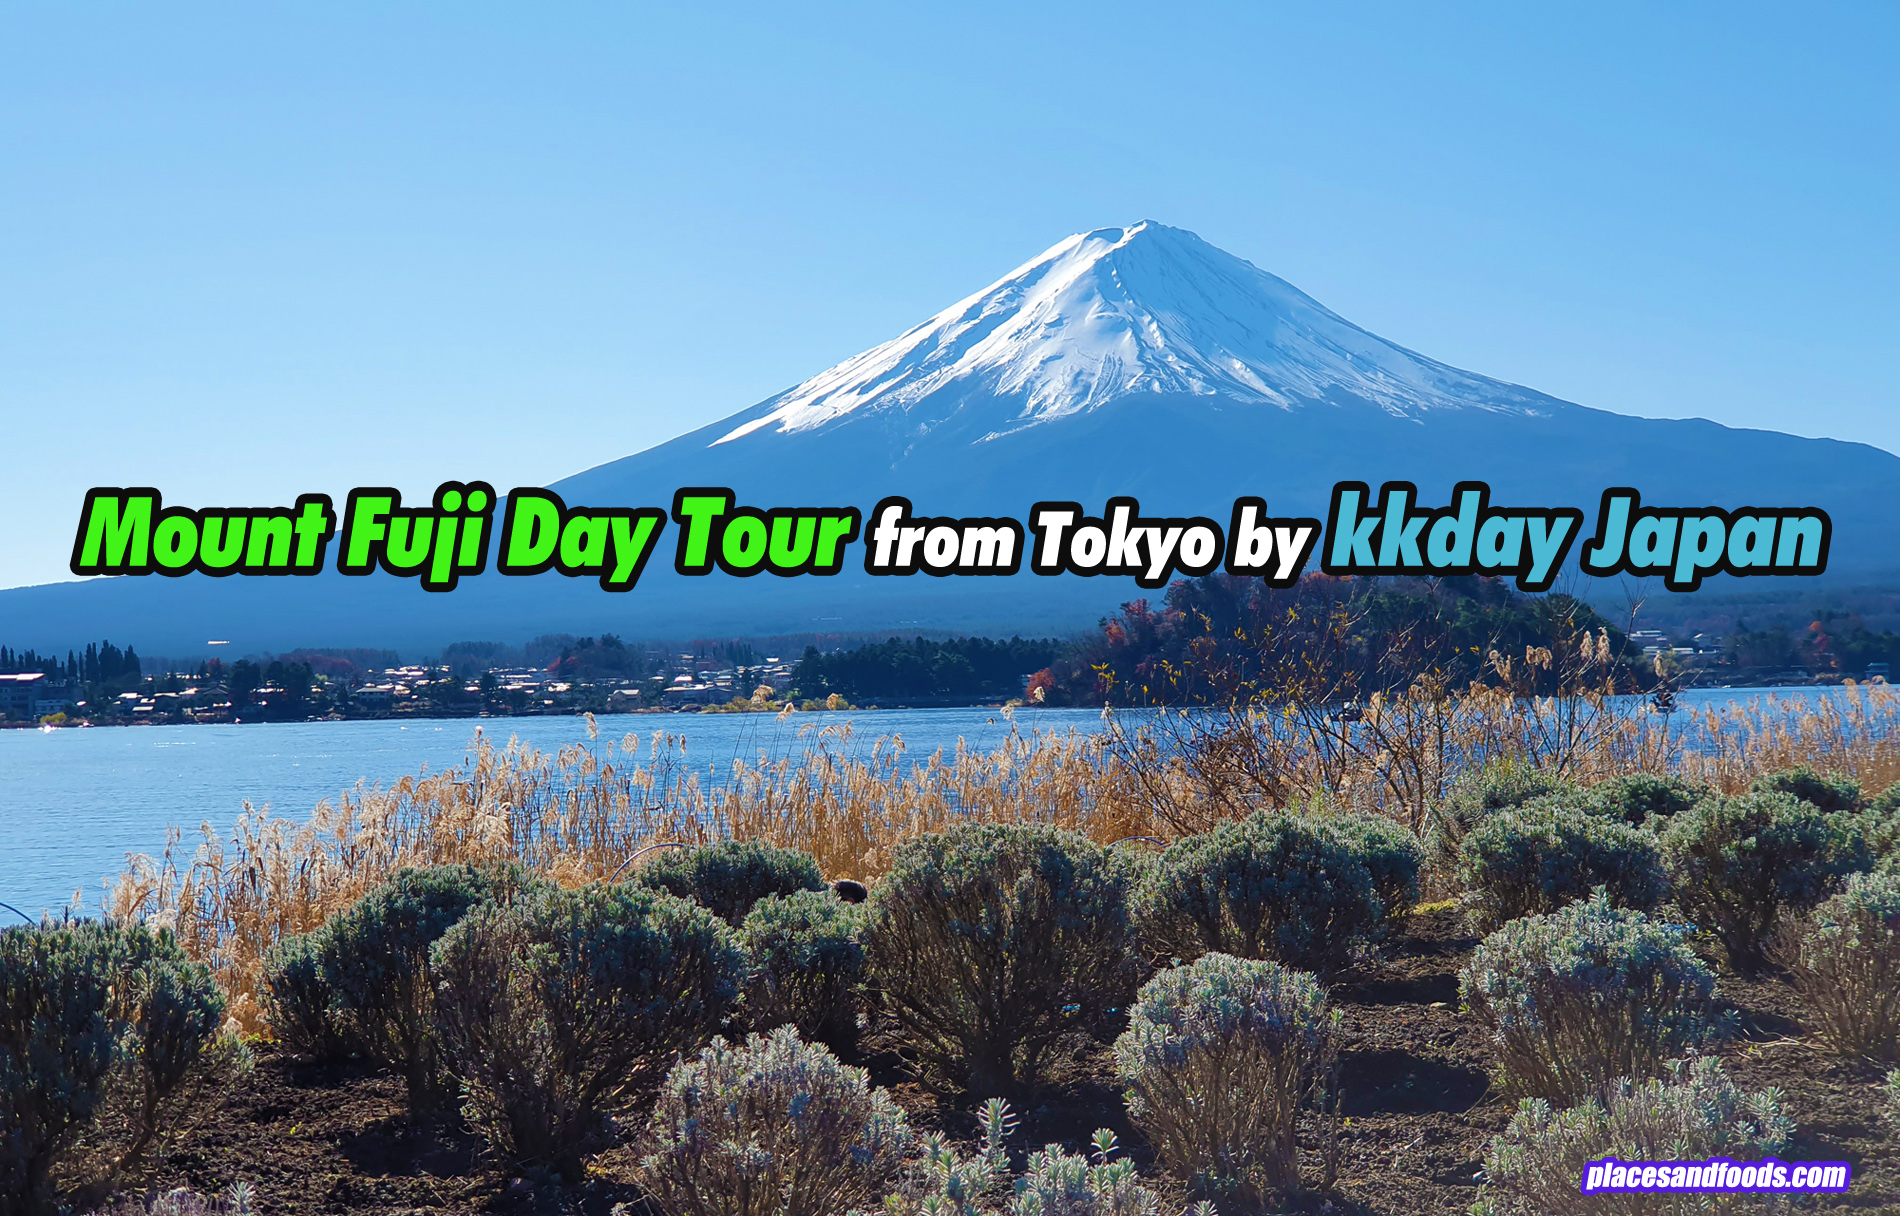 kkday japan day tour